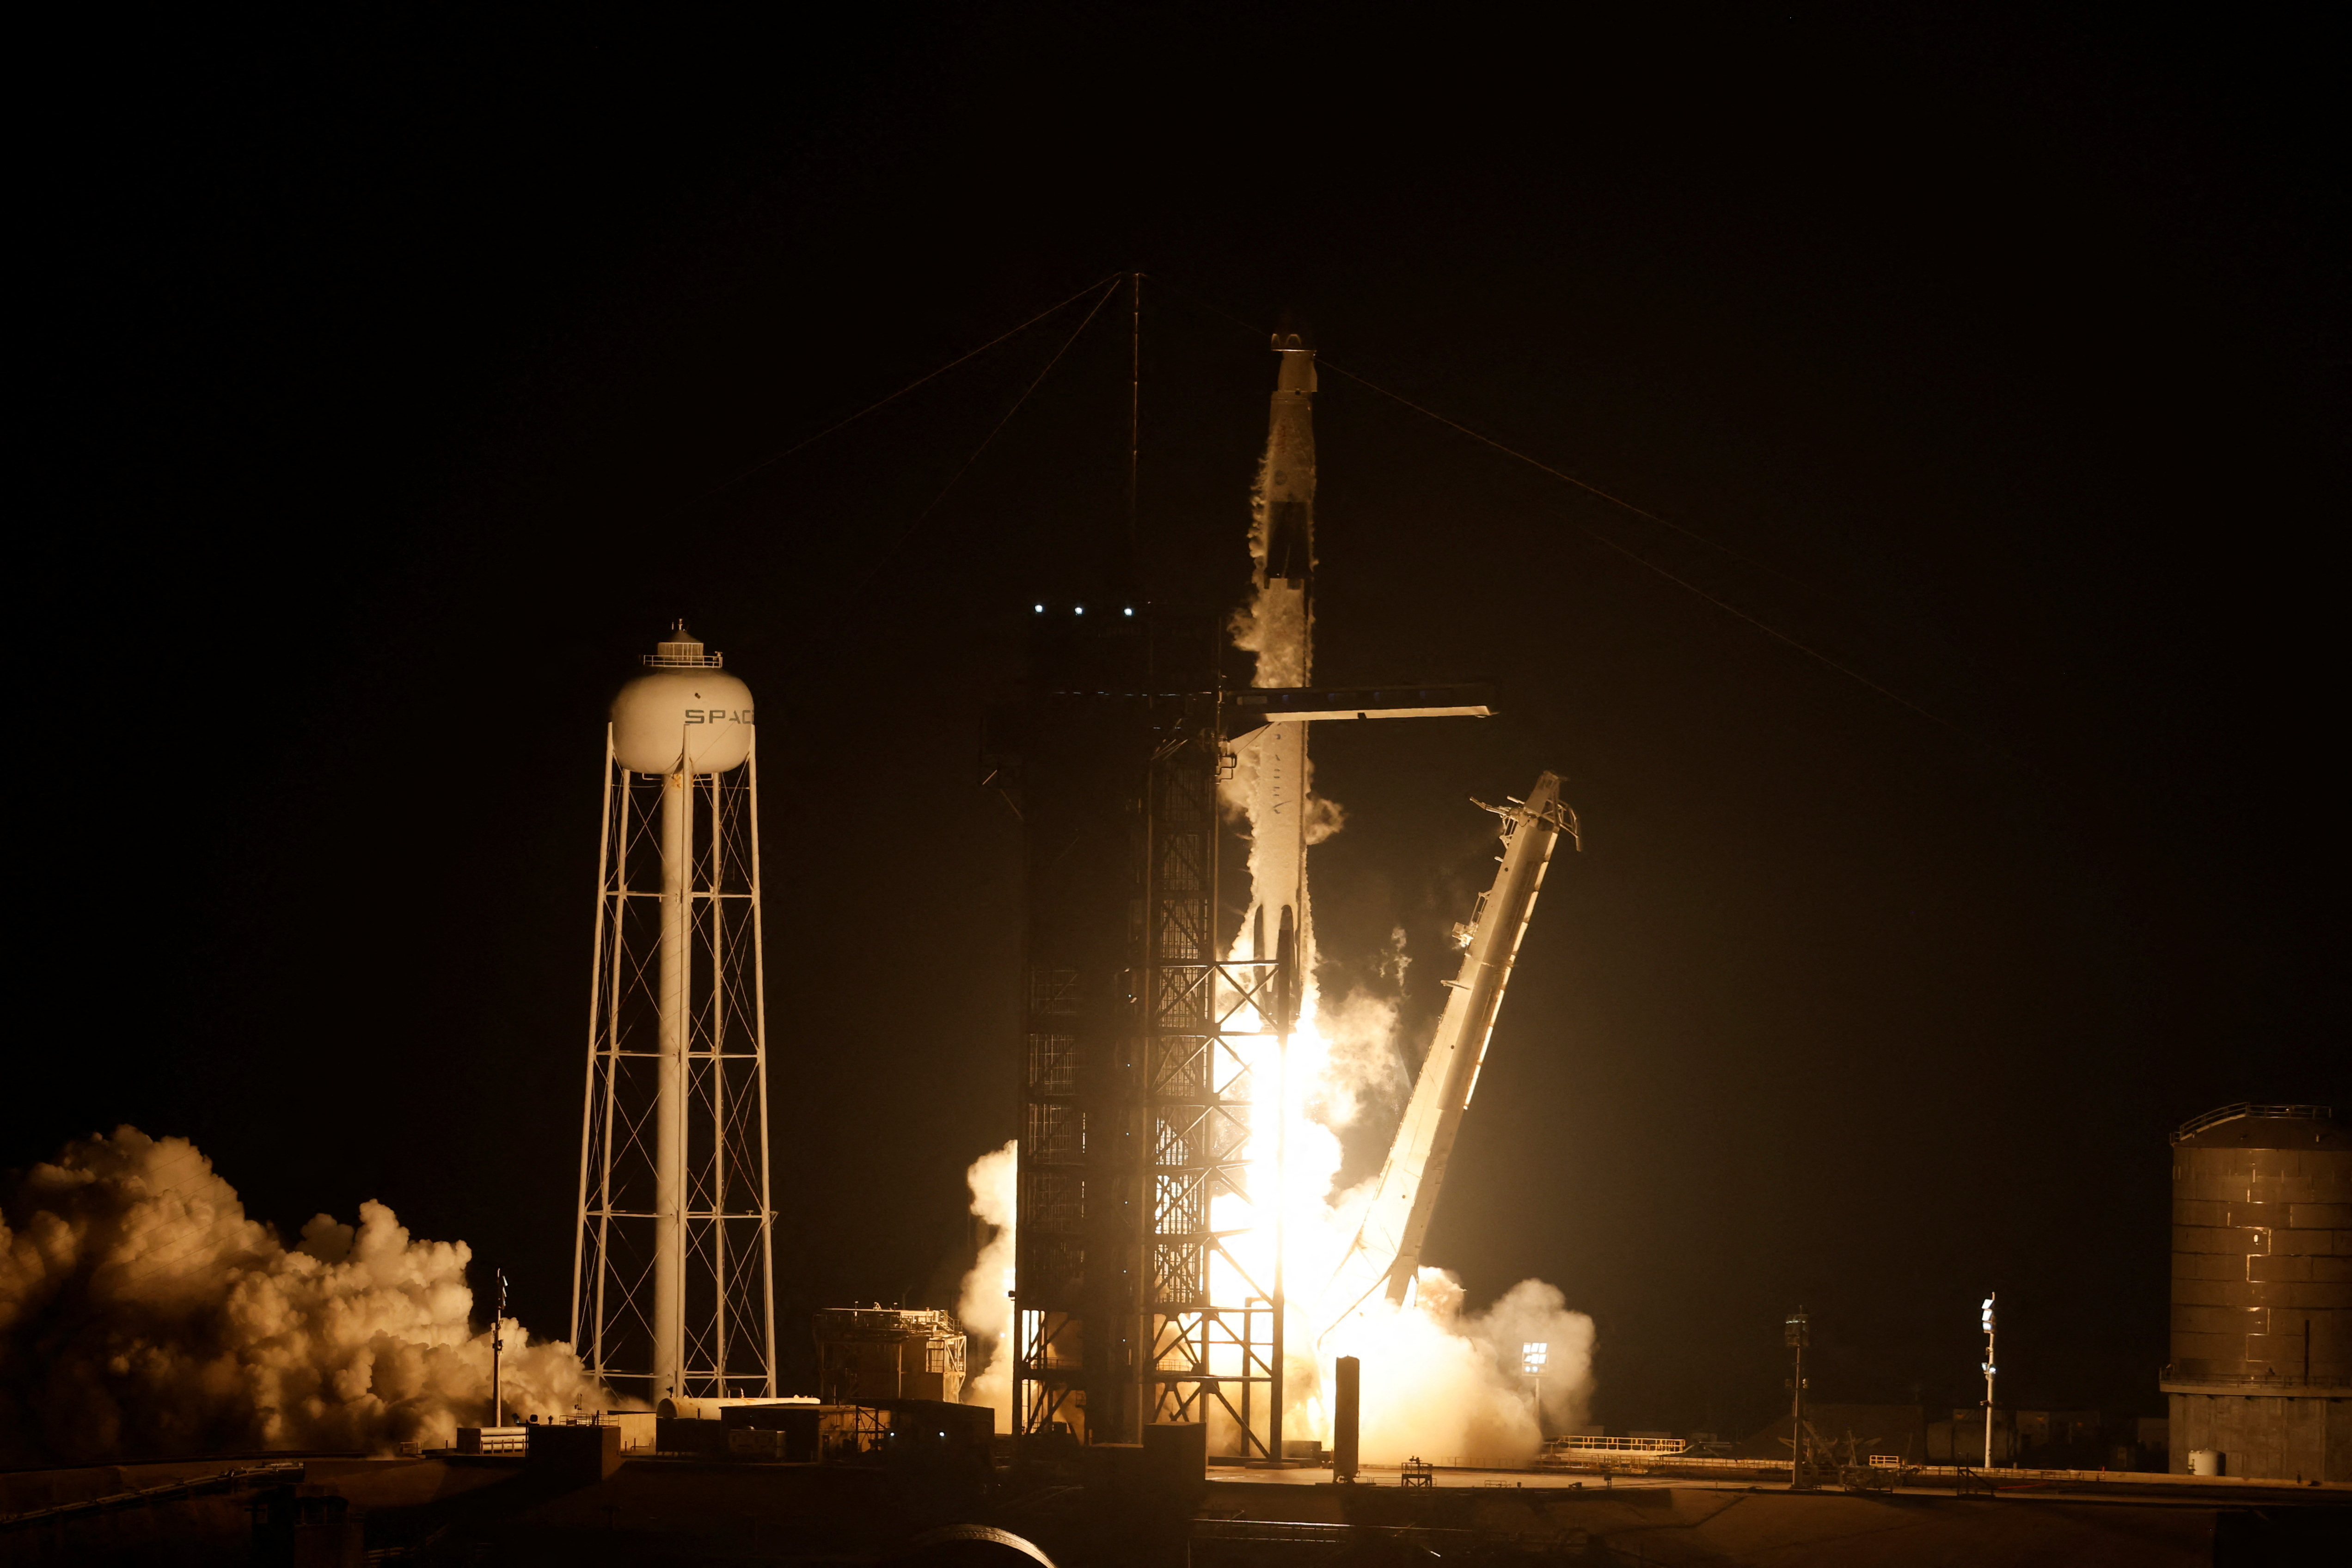 تنطلق مهمة SpaceX Crew-6 التابعة لناسا إلى محطة الفضاء الدولية من مركز كينيدي للفضاء في كيب كانافيرال